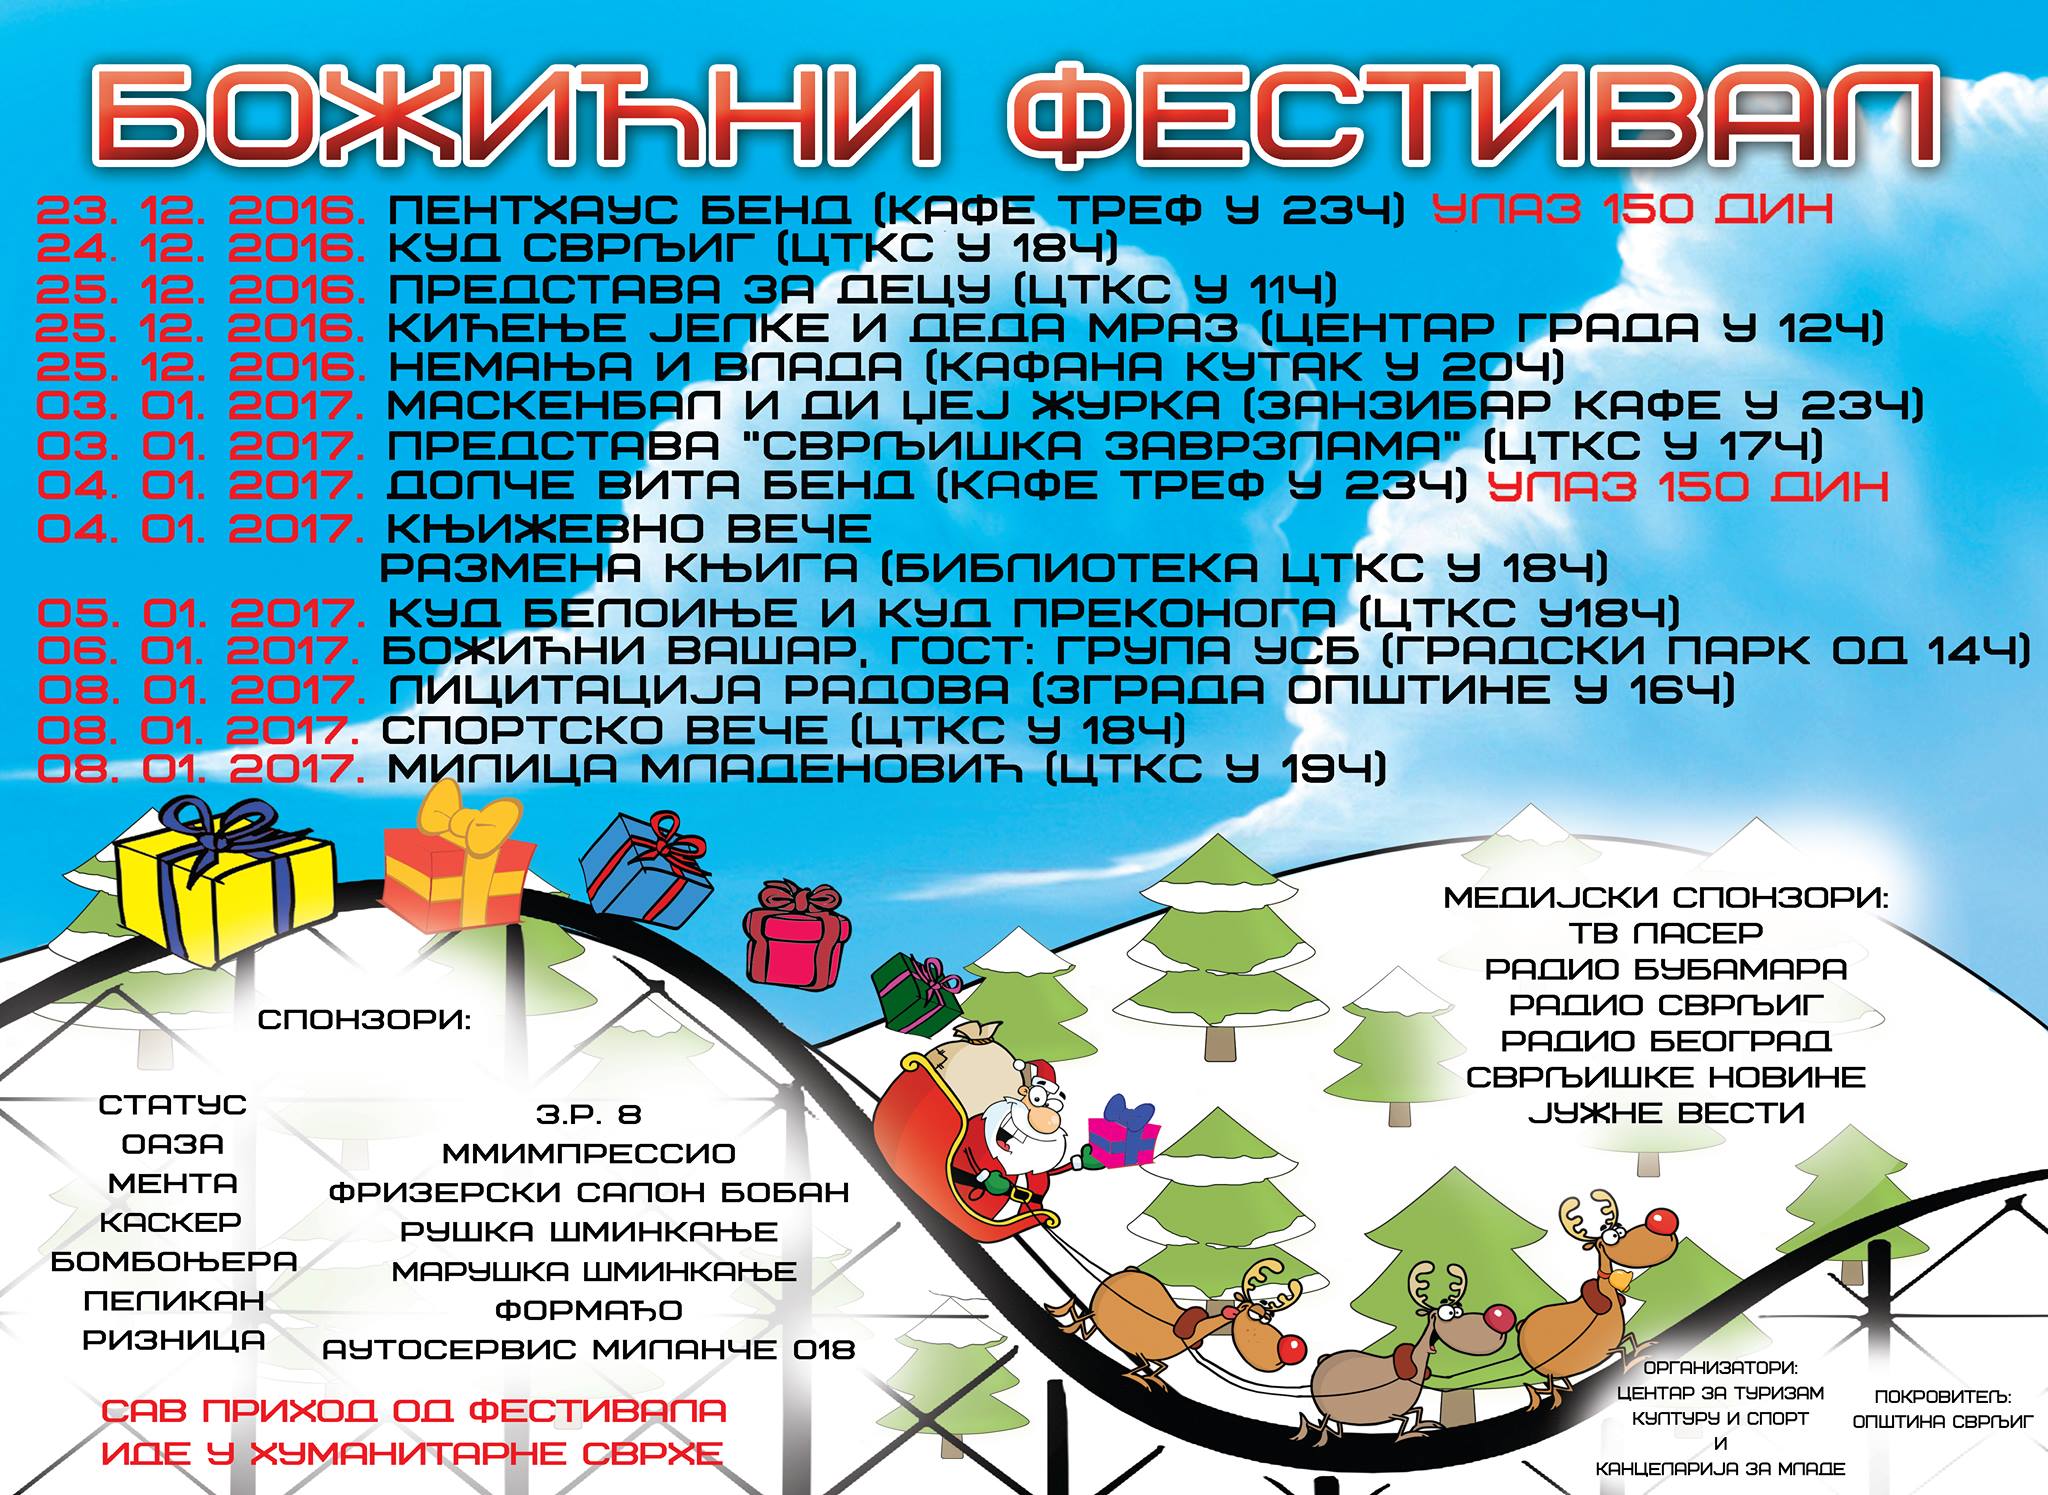 Program festivala